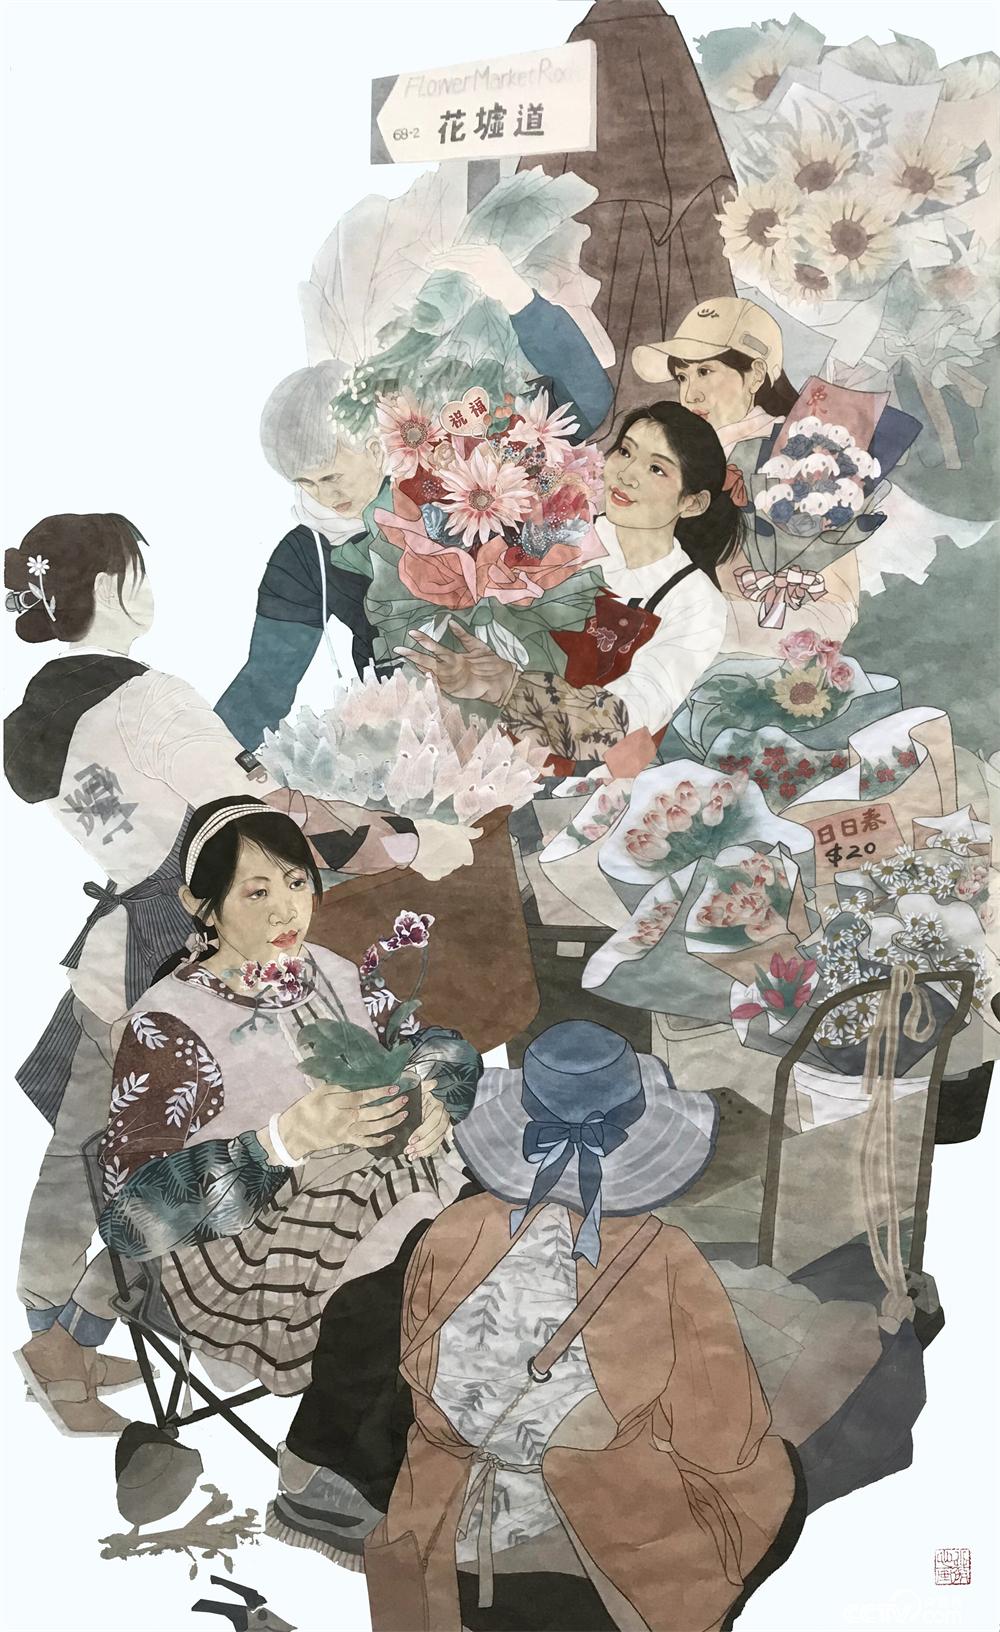 刘洋之龙、杨小薇《旺角花墟春意浓》  中国画  200厘米×140厘米  2022